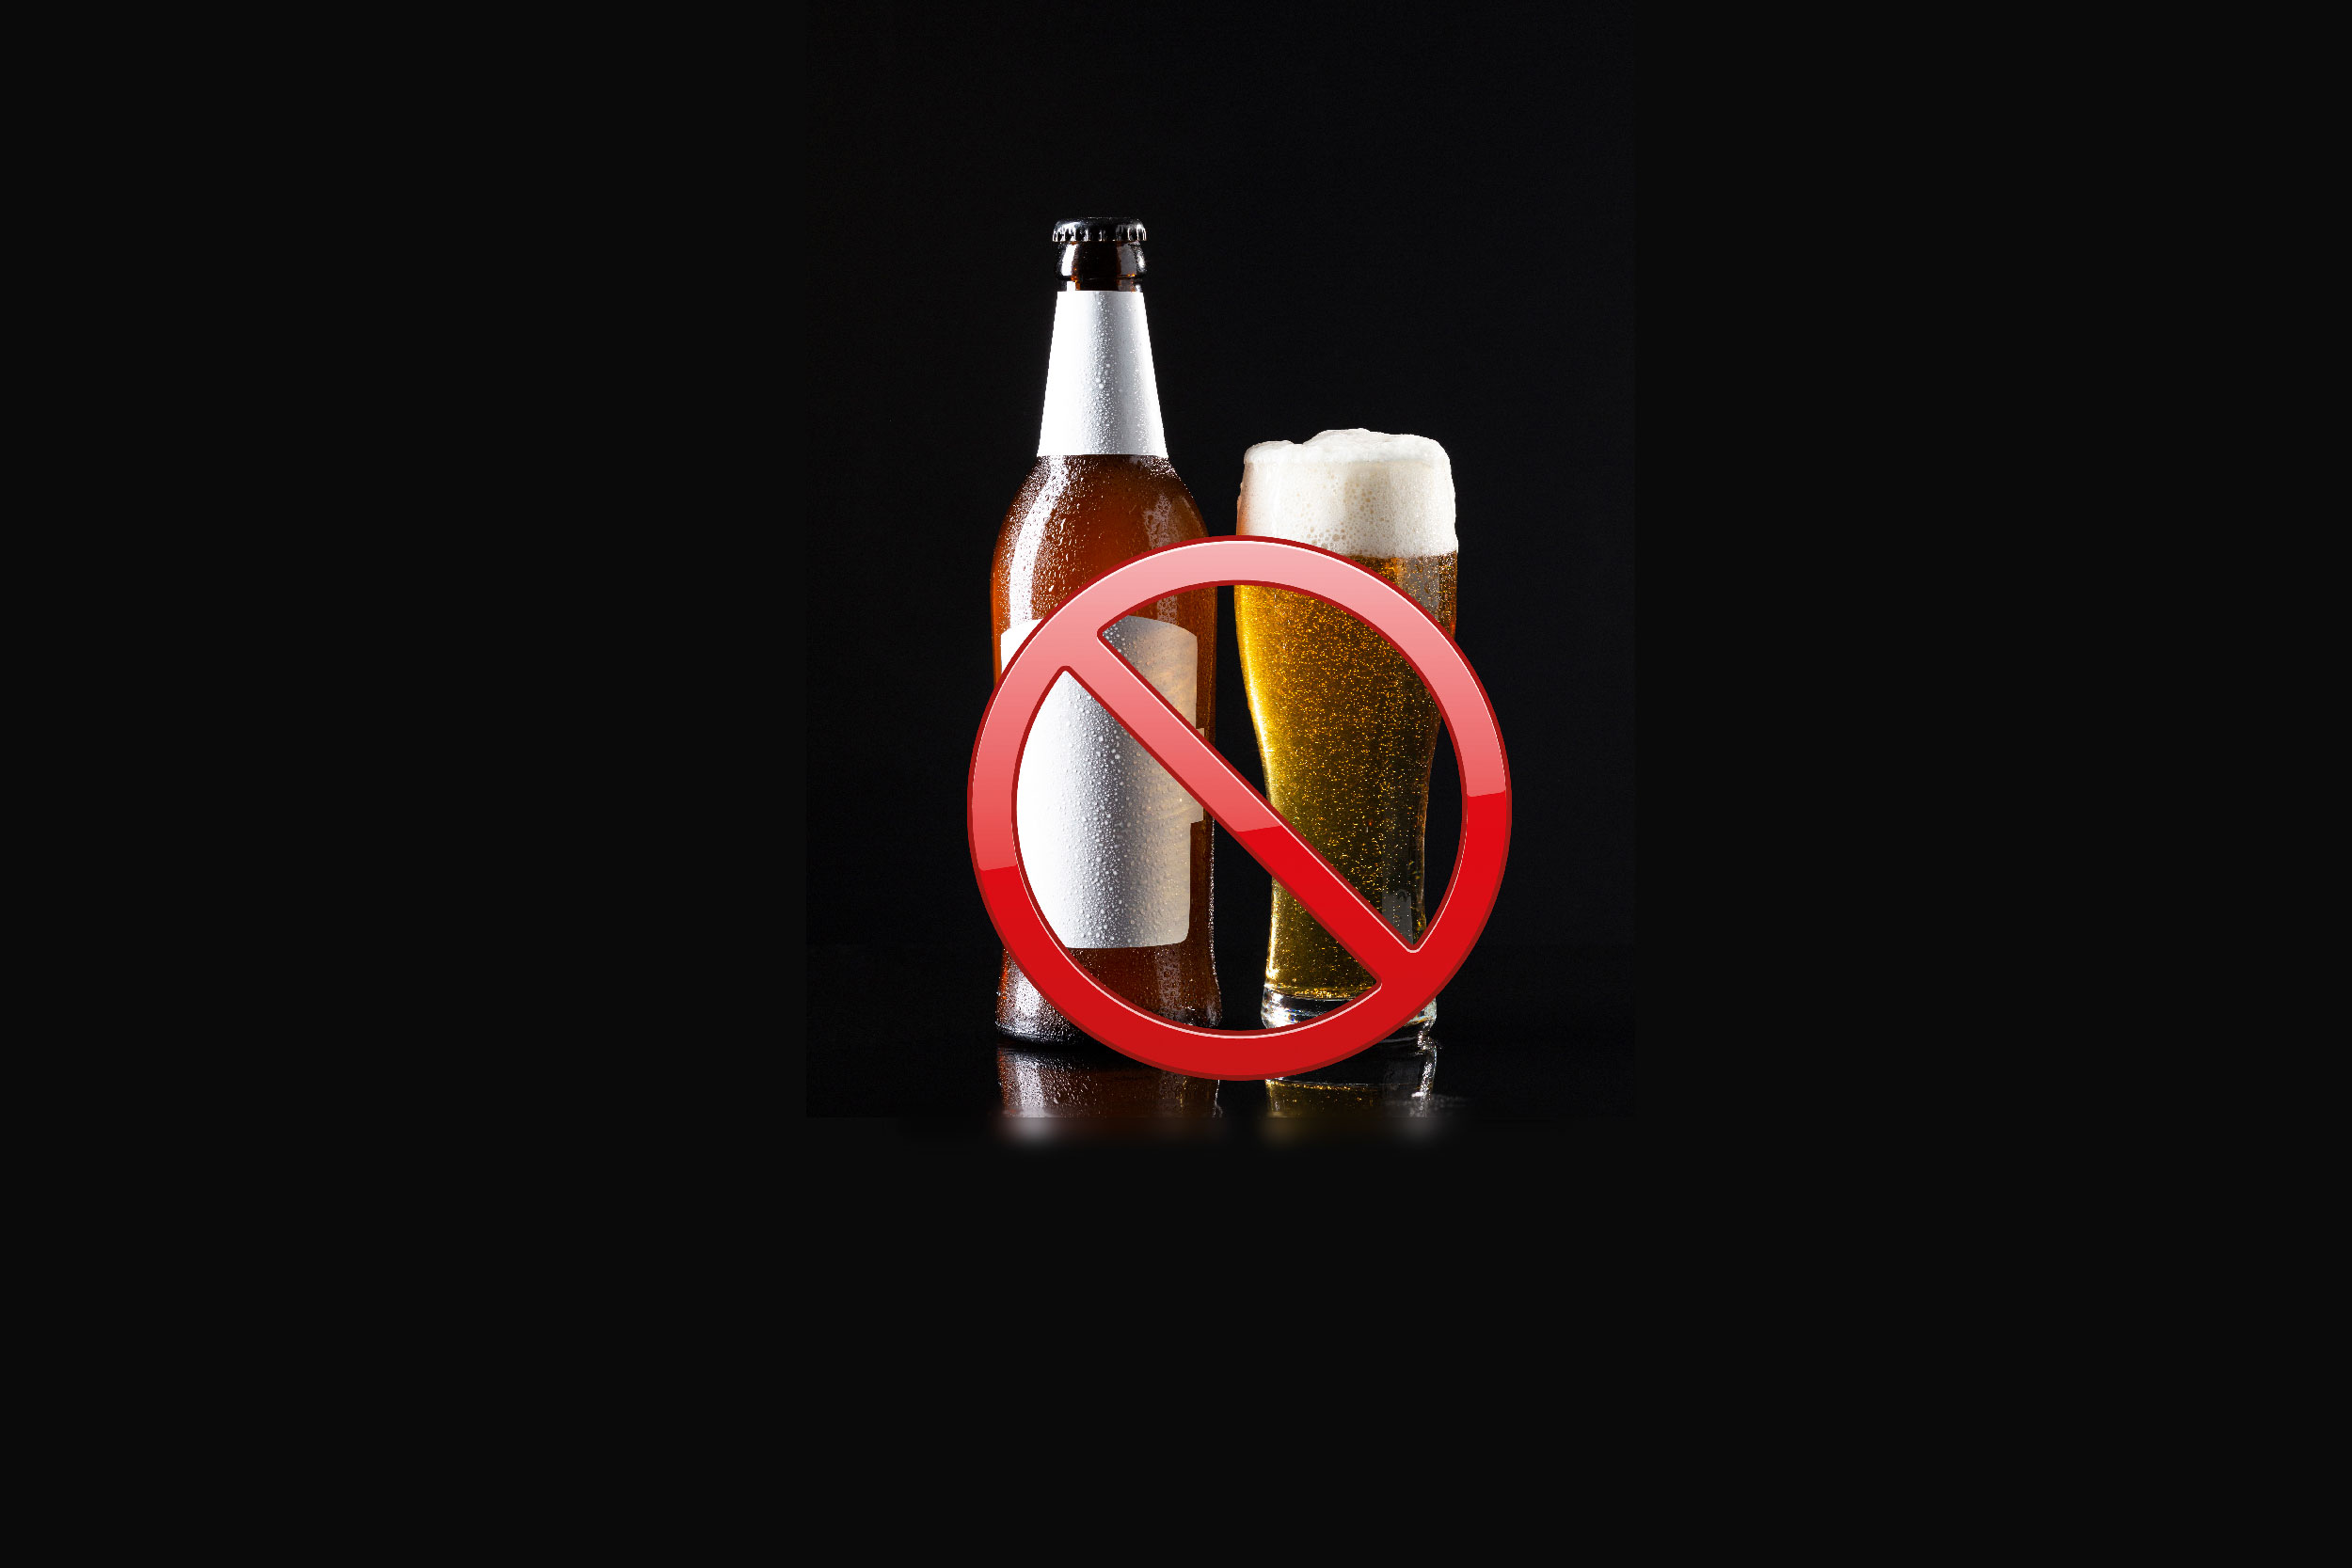 Ilustração mostra cope e garrafa de cerveja com um símbolo de proibido em cima